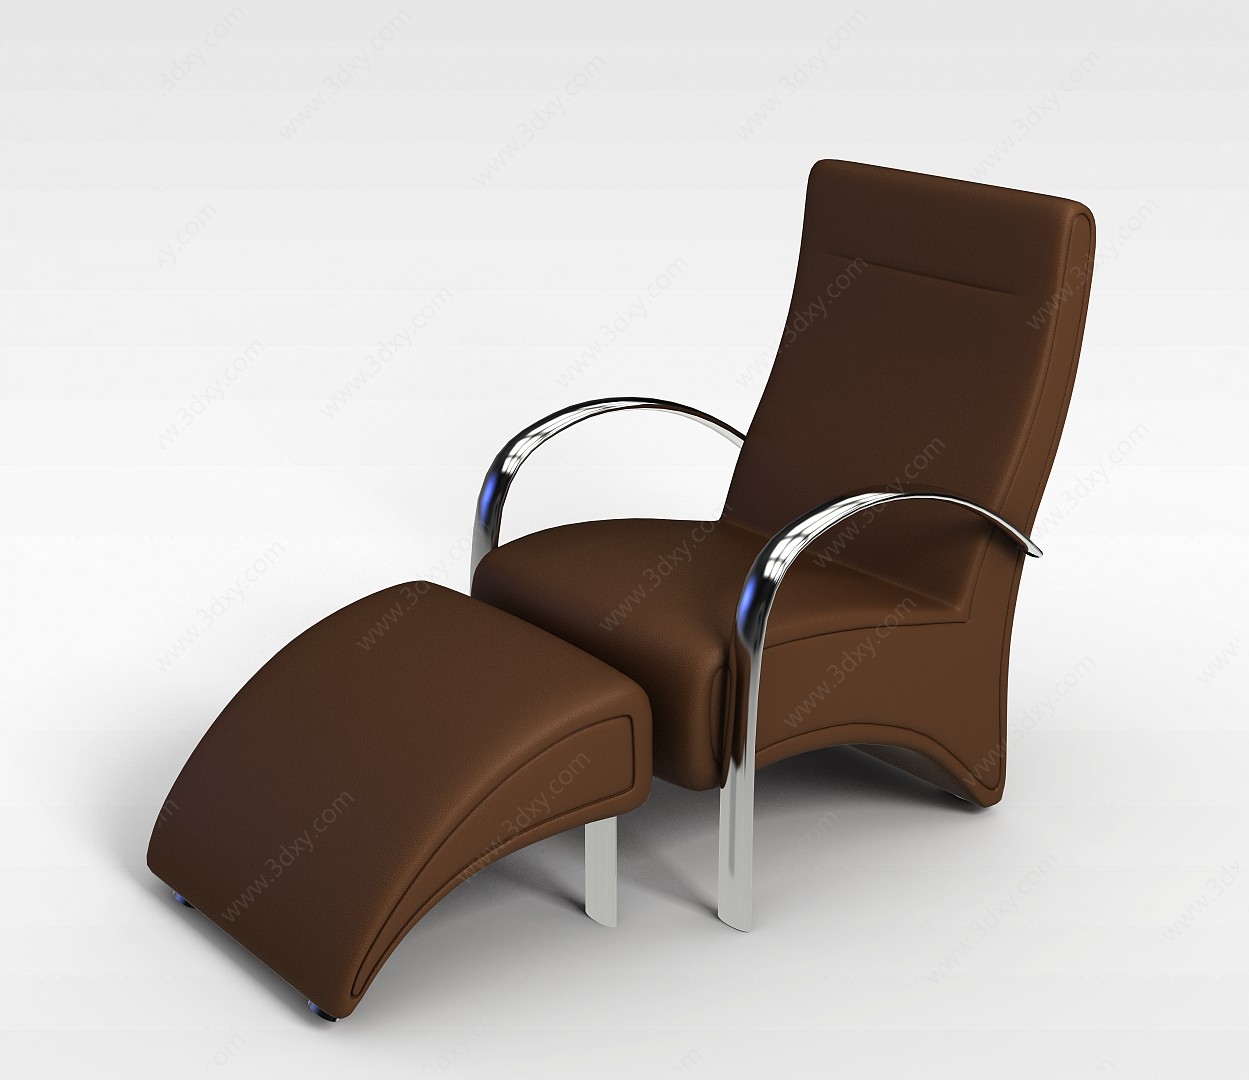 私人影院沙发椅子3D模型